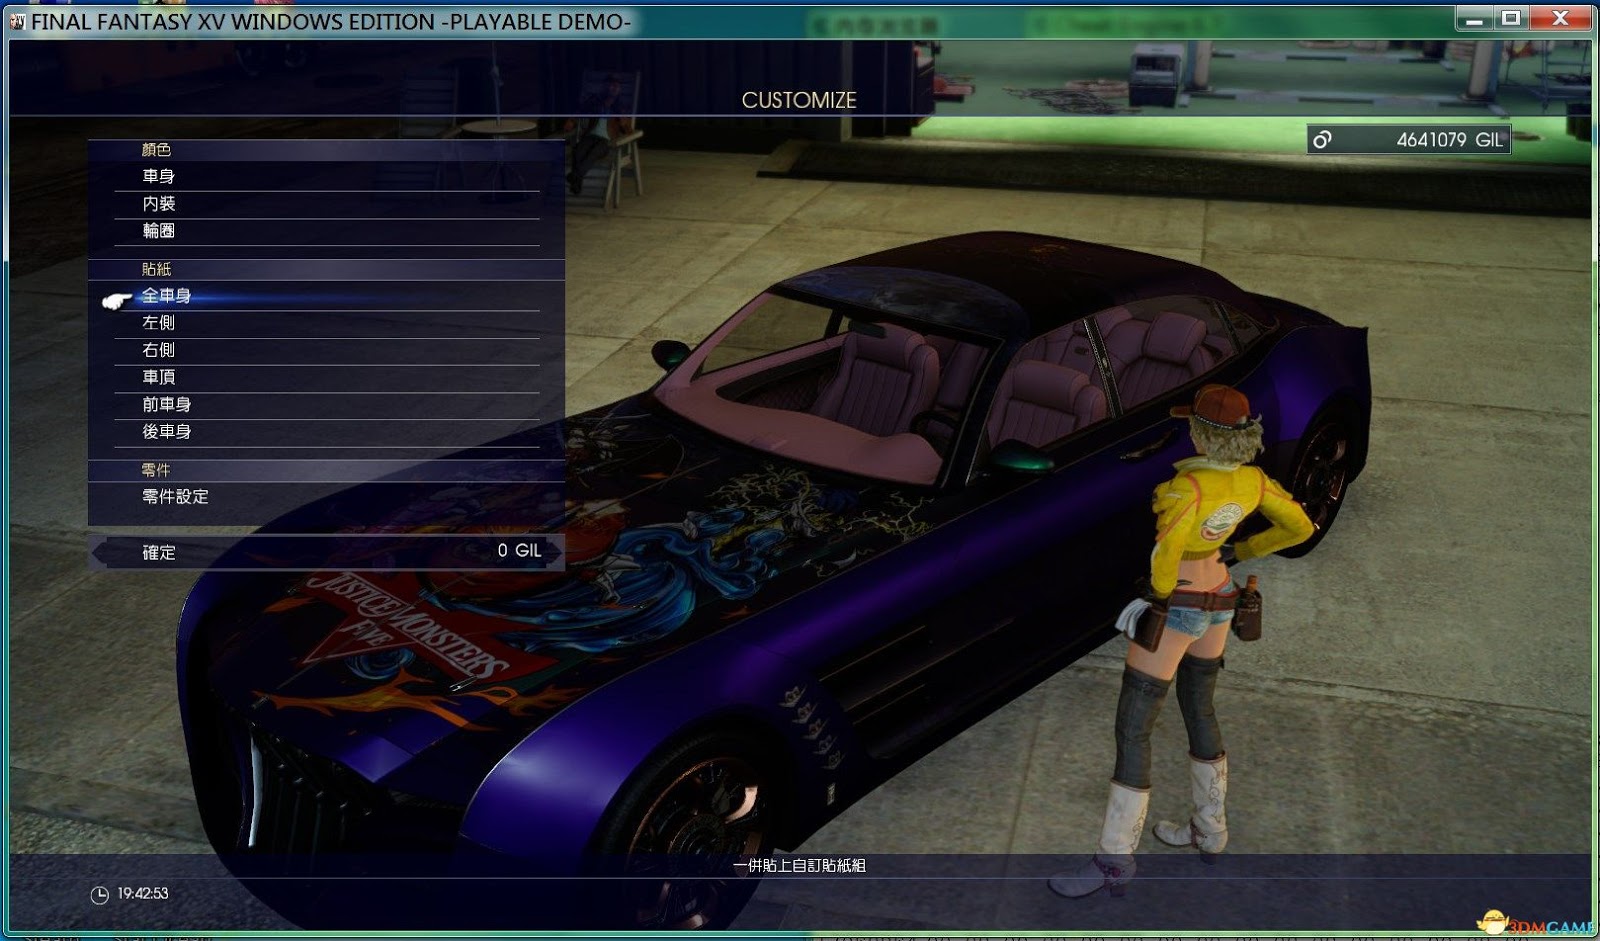 太空戰士15 Final Fantasy Xv 車體特典與路希斯王的禮服外觀一覽 娛樂計程車